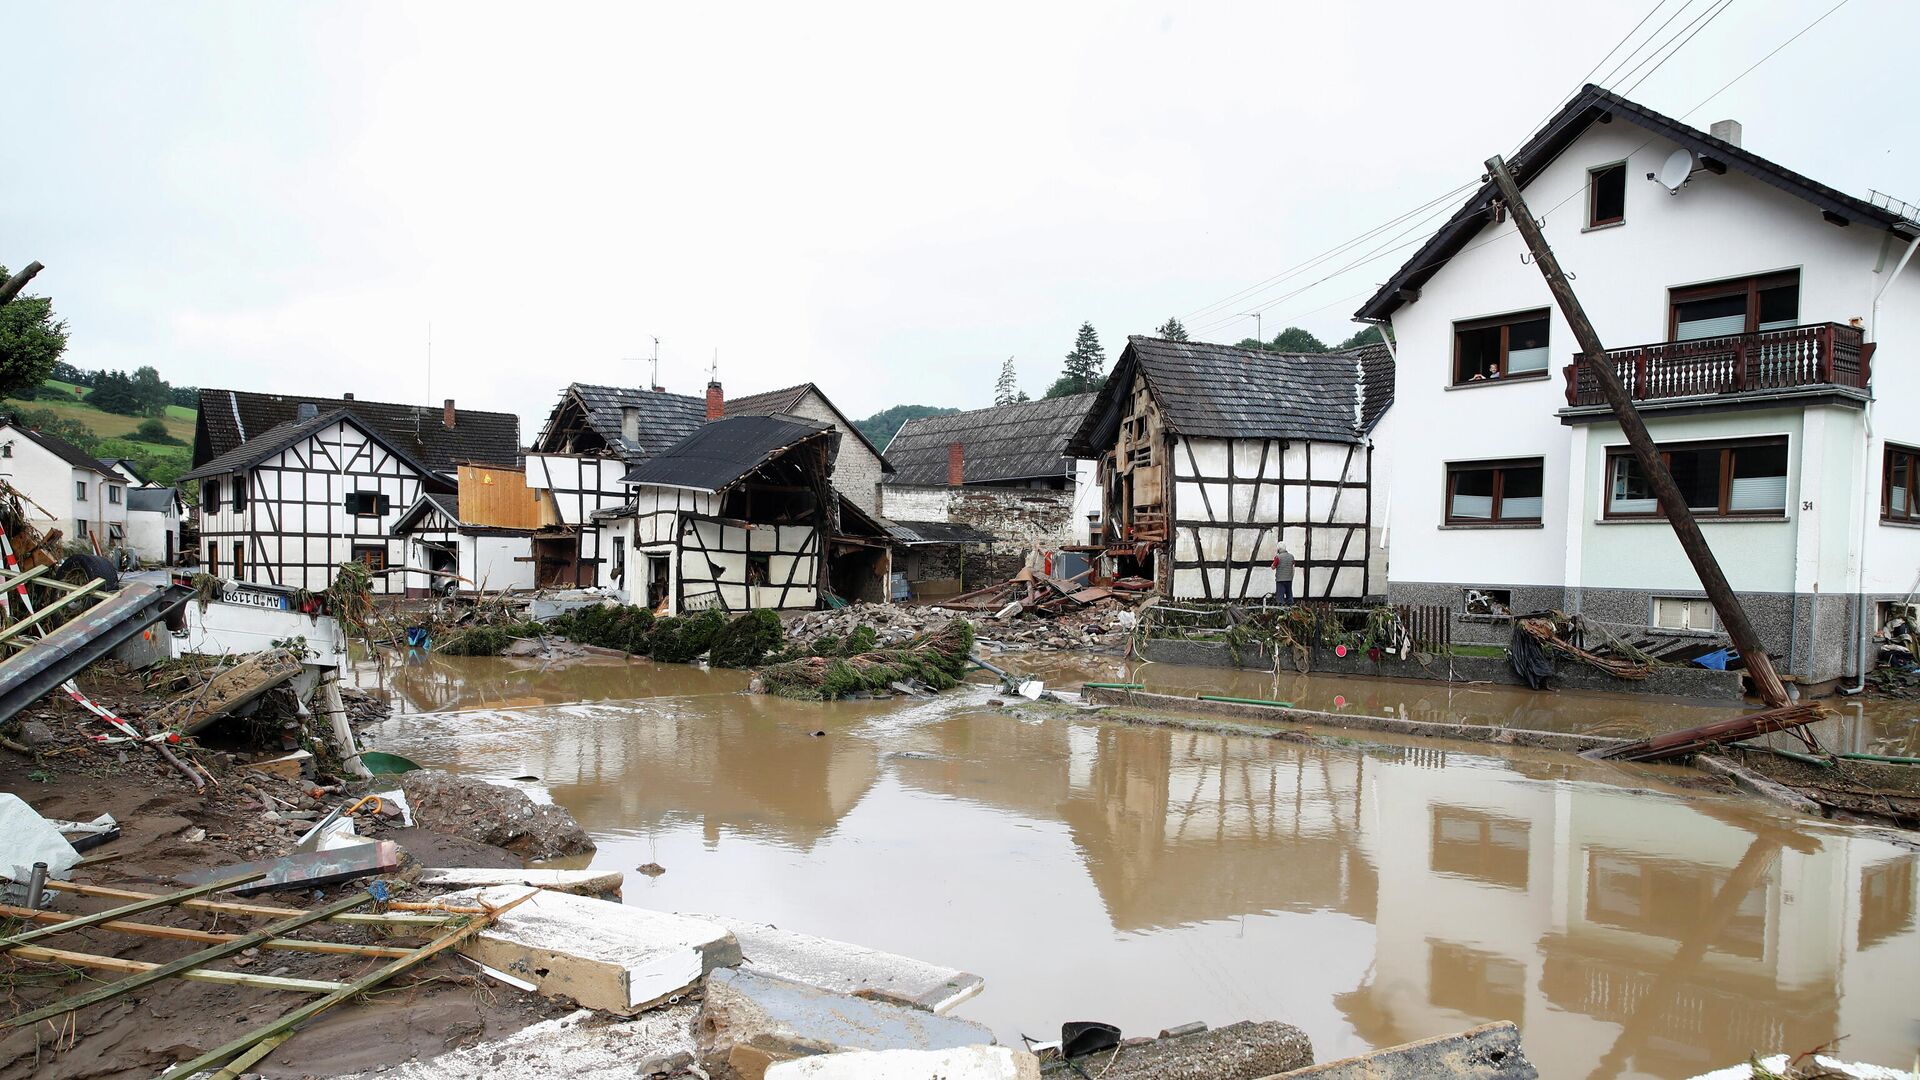 Общий вид зоны, пострадавшей от наводнения после проливных дождей в Шульде, Германия - РИА Новости, 1920, 16.07.2021